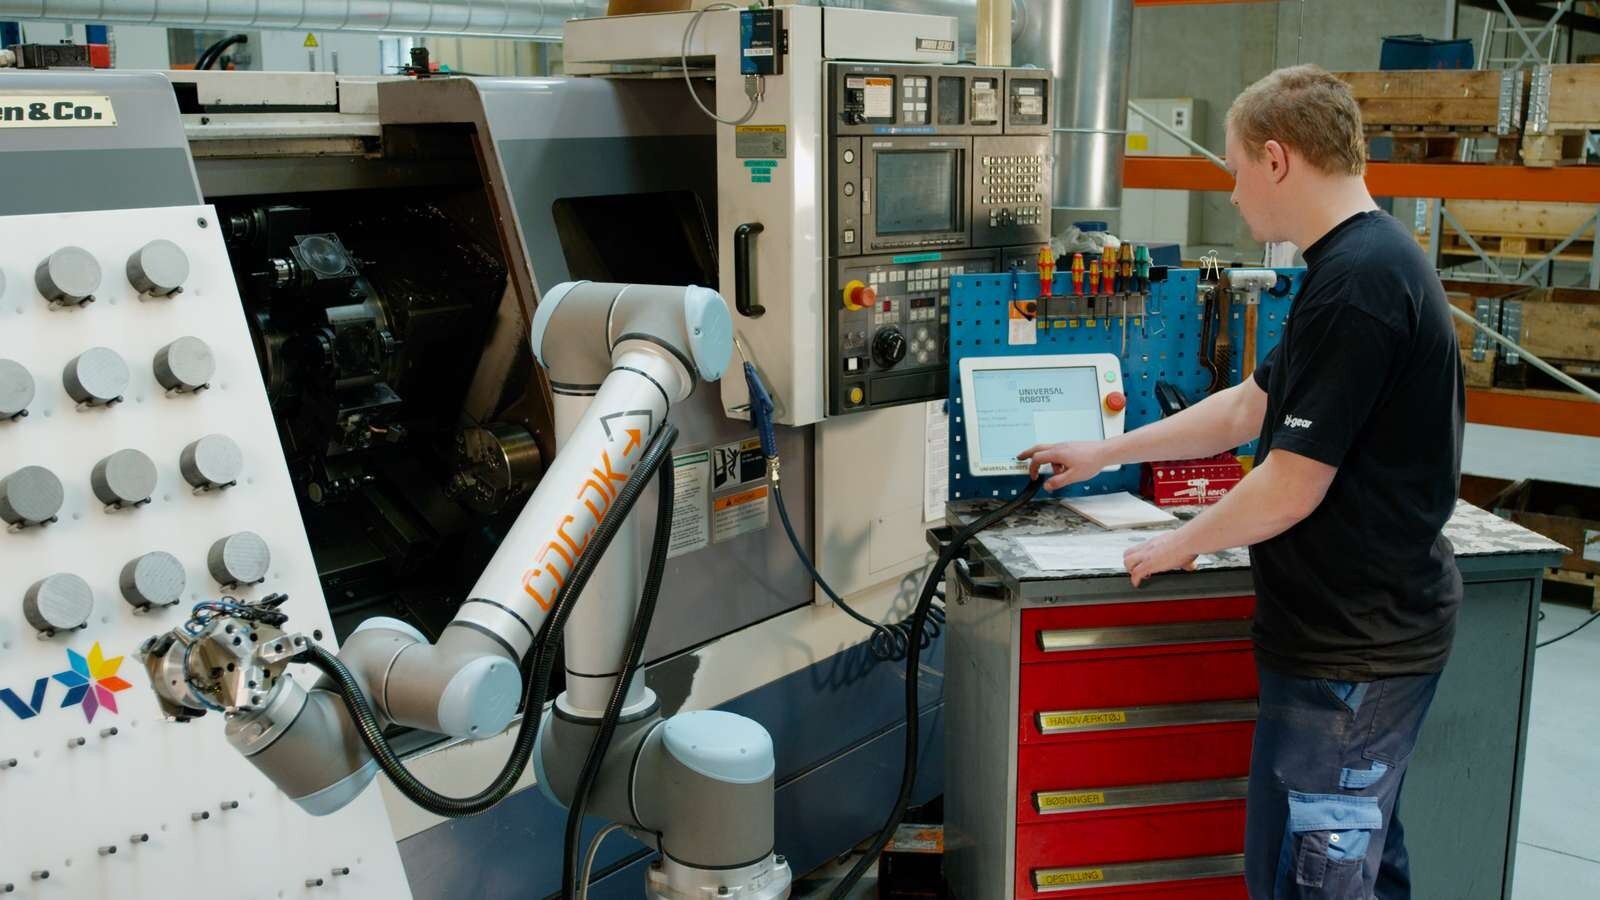 ความสัมพันธ์ของมนุษย์กับหุ่นยนต์ในการทำงานอุตสาหกรรม